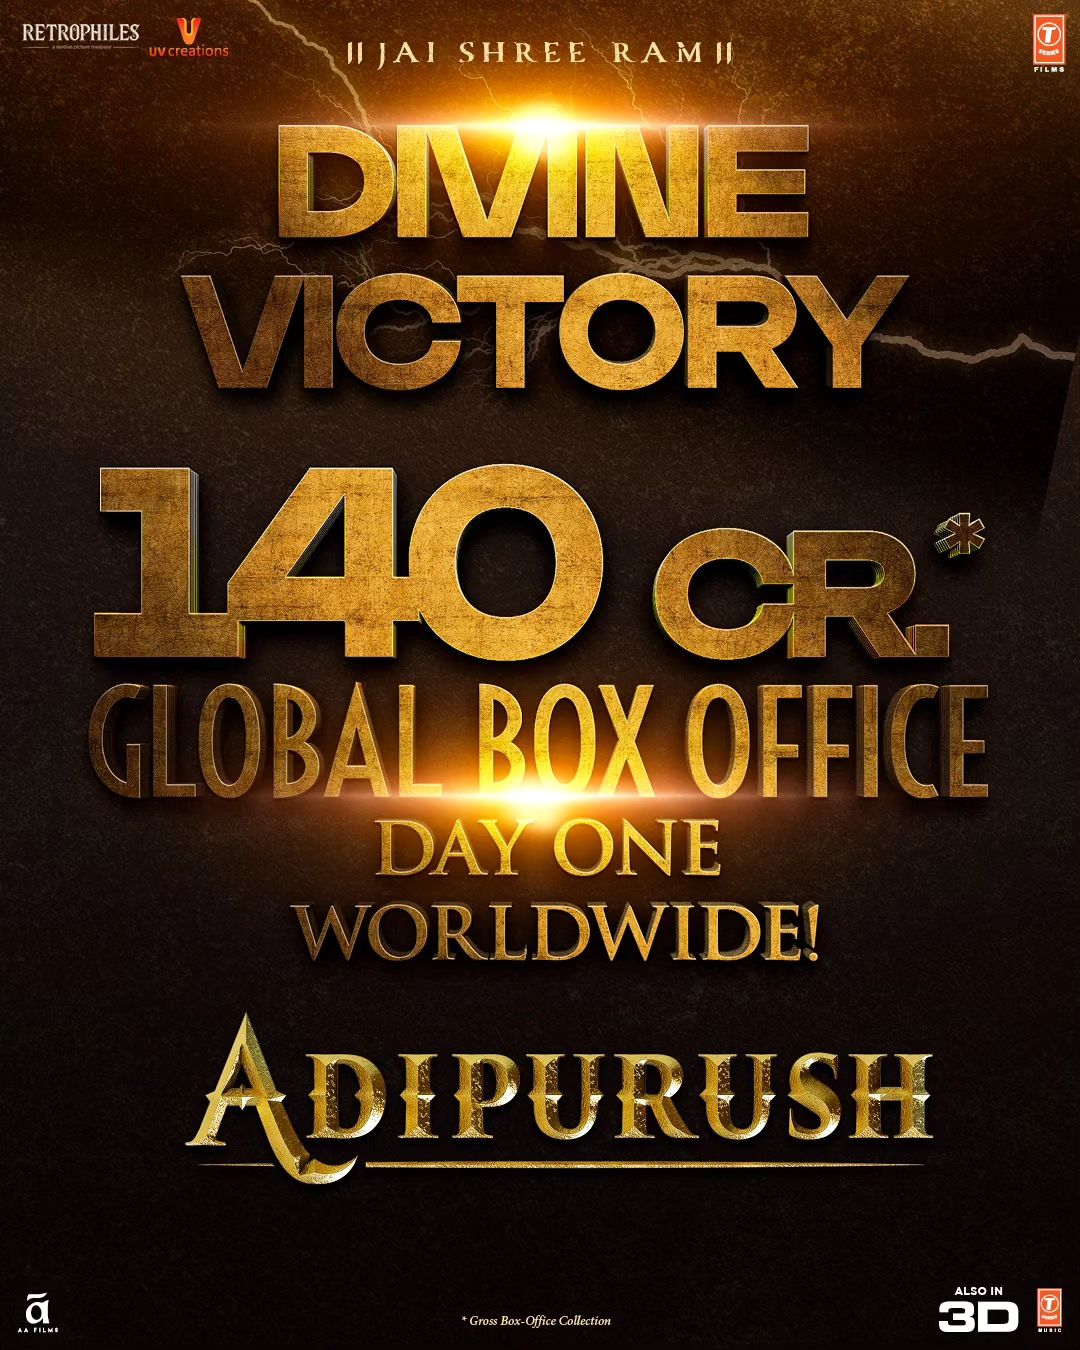 Adipurush day 1 global box office